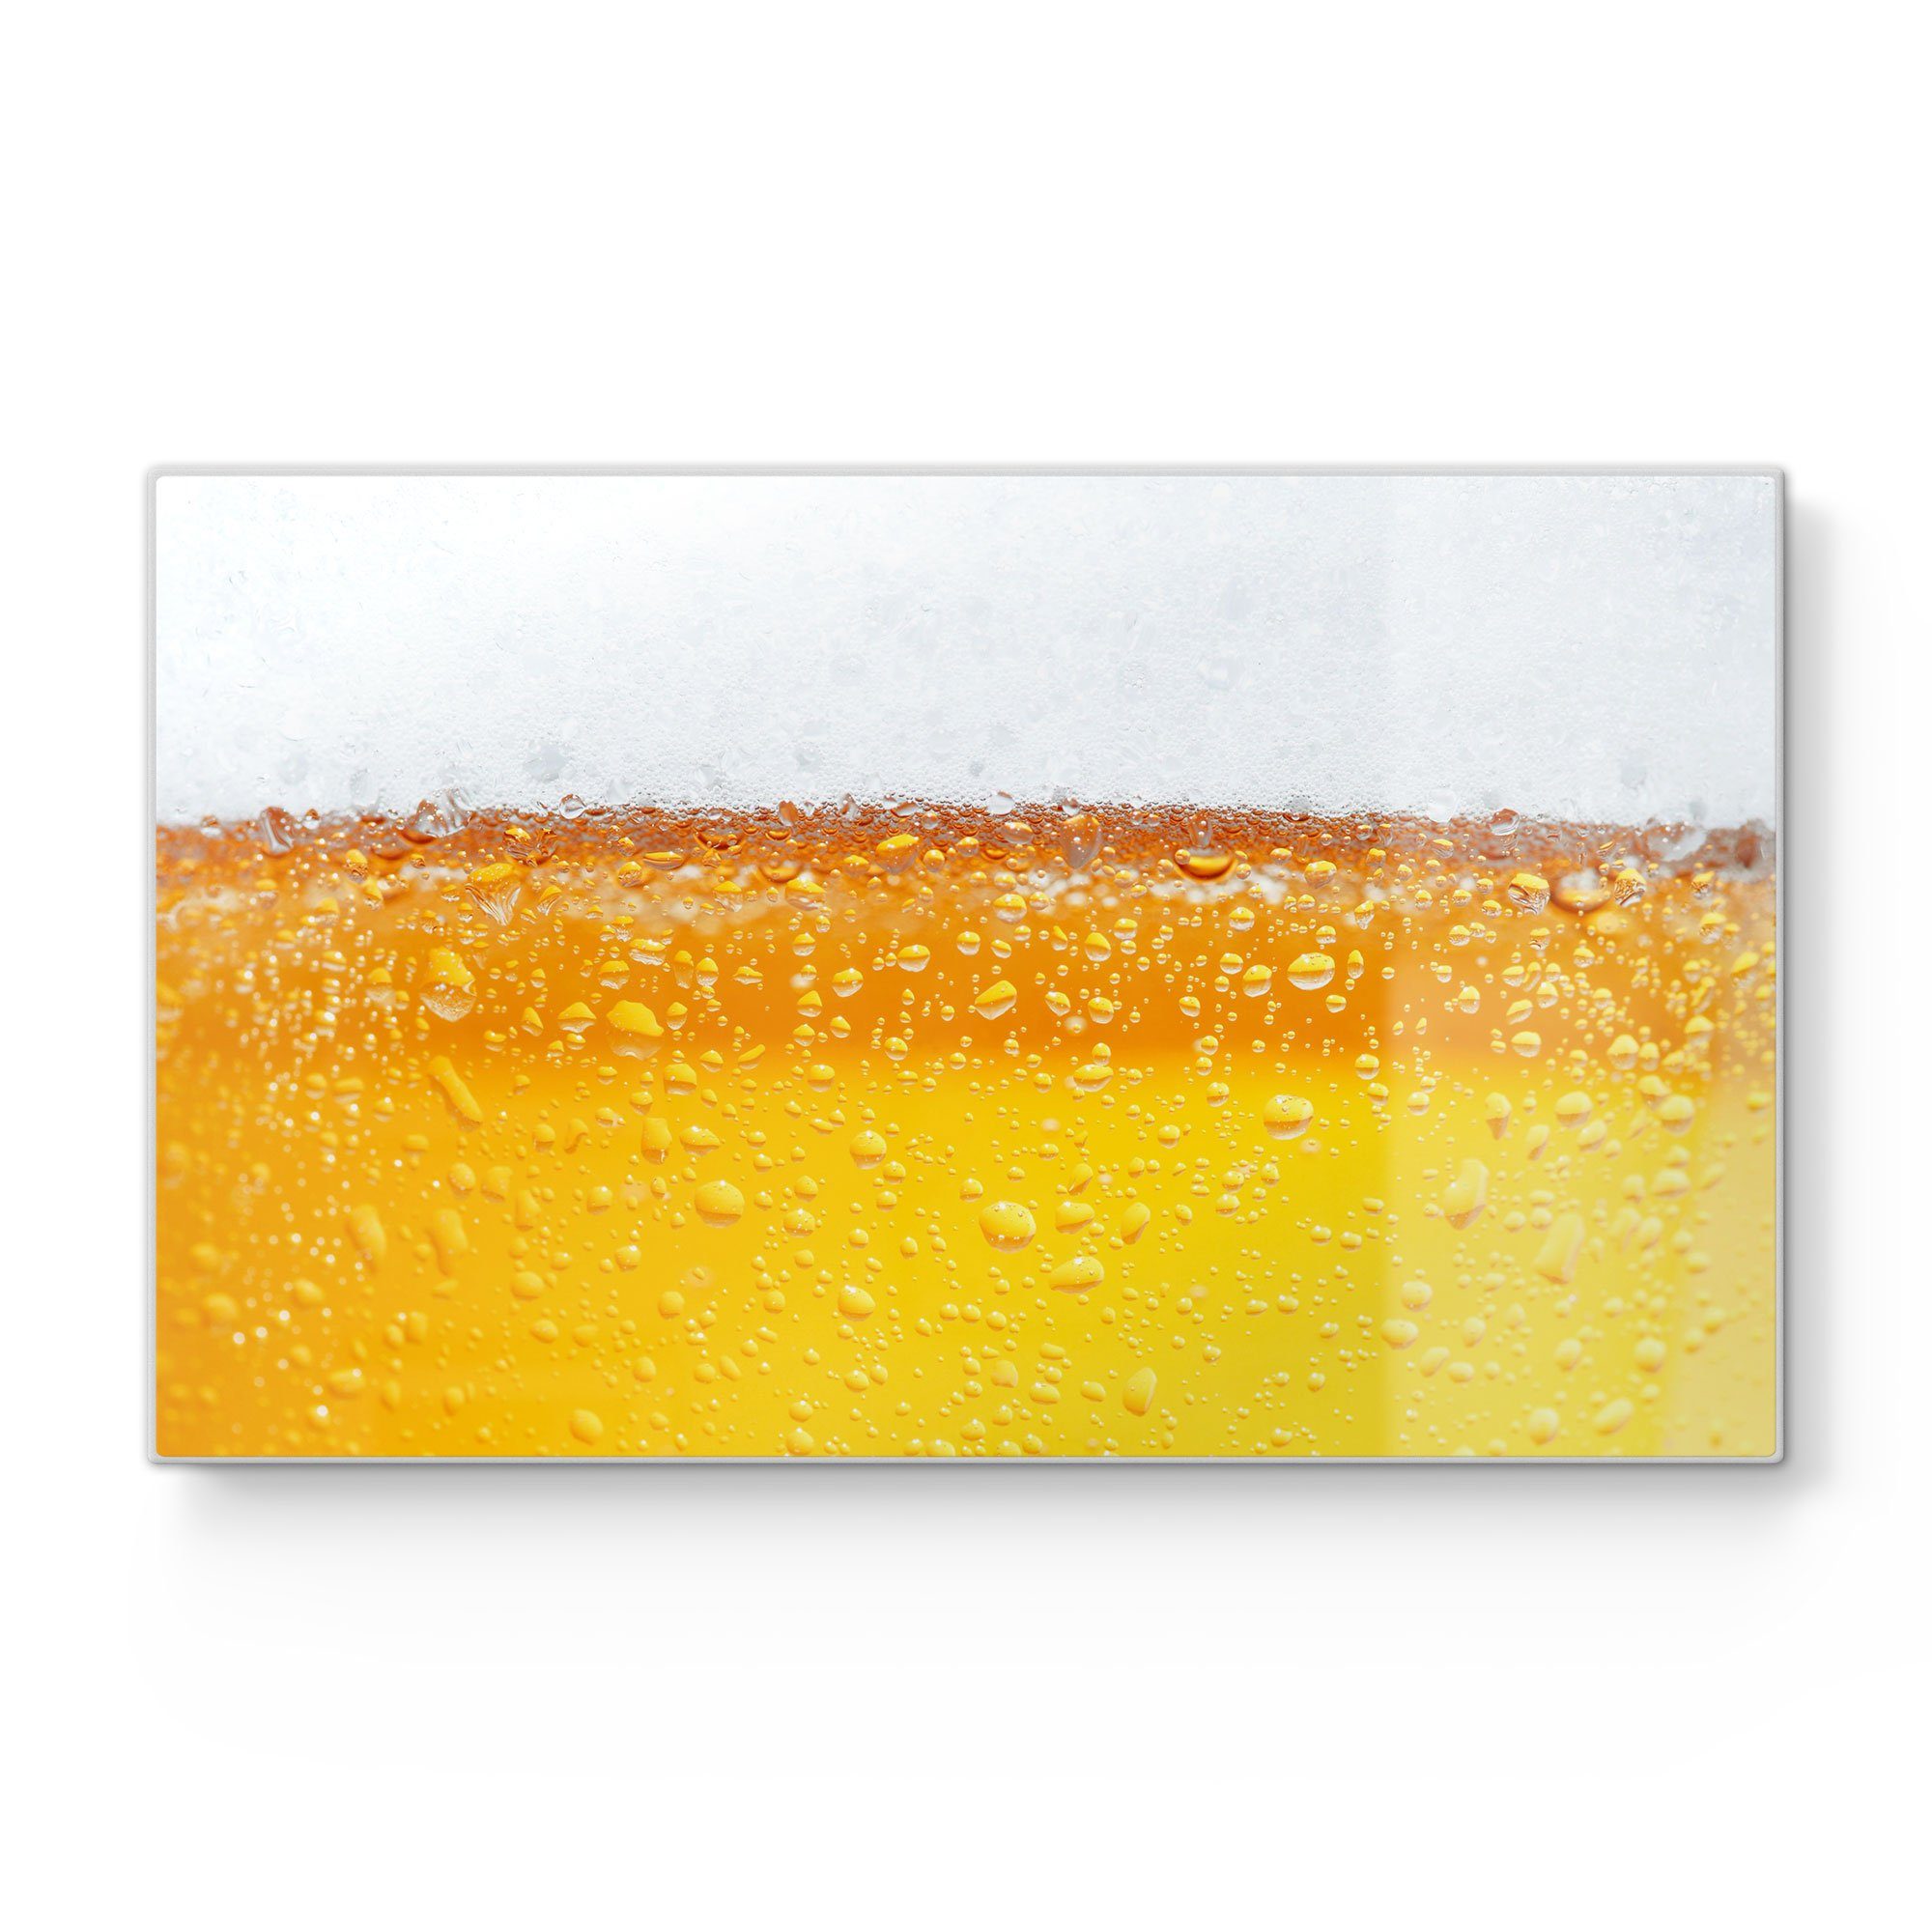 DEQORI Schneidebrett 'Bier mit Schneideplatte Glas, Frühstücksbrett Platte Schaumkrone'